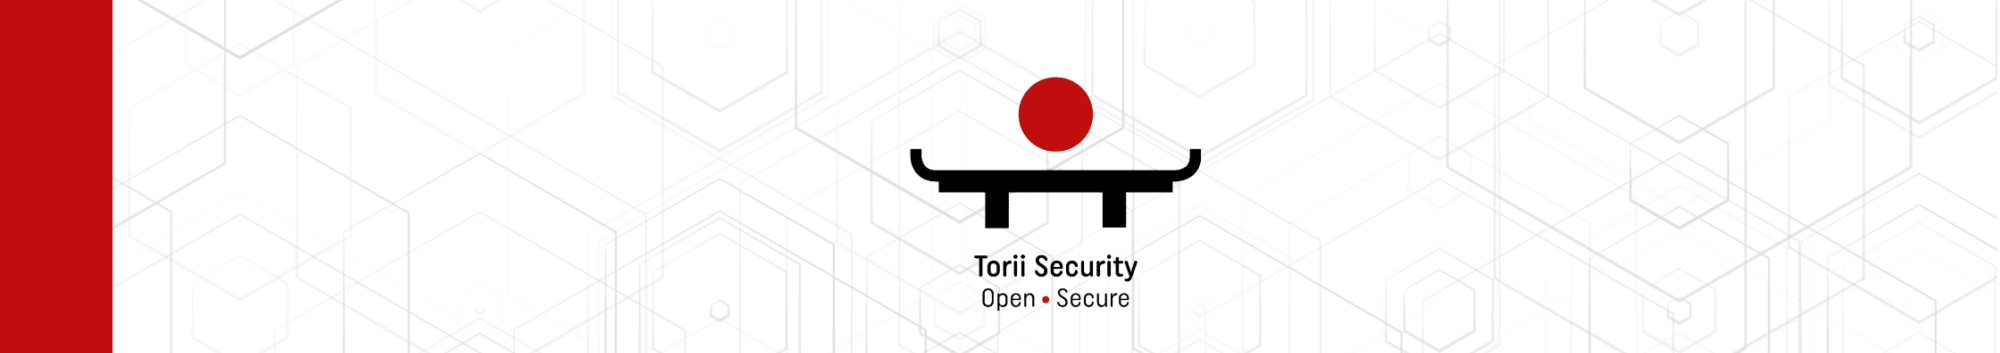 Bannière blog avec le logo Torii Security